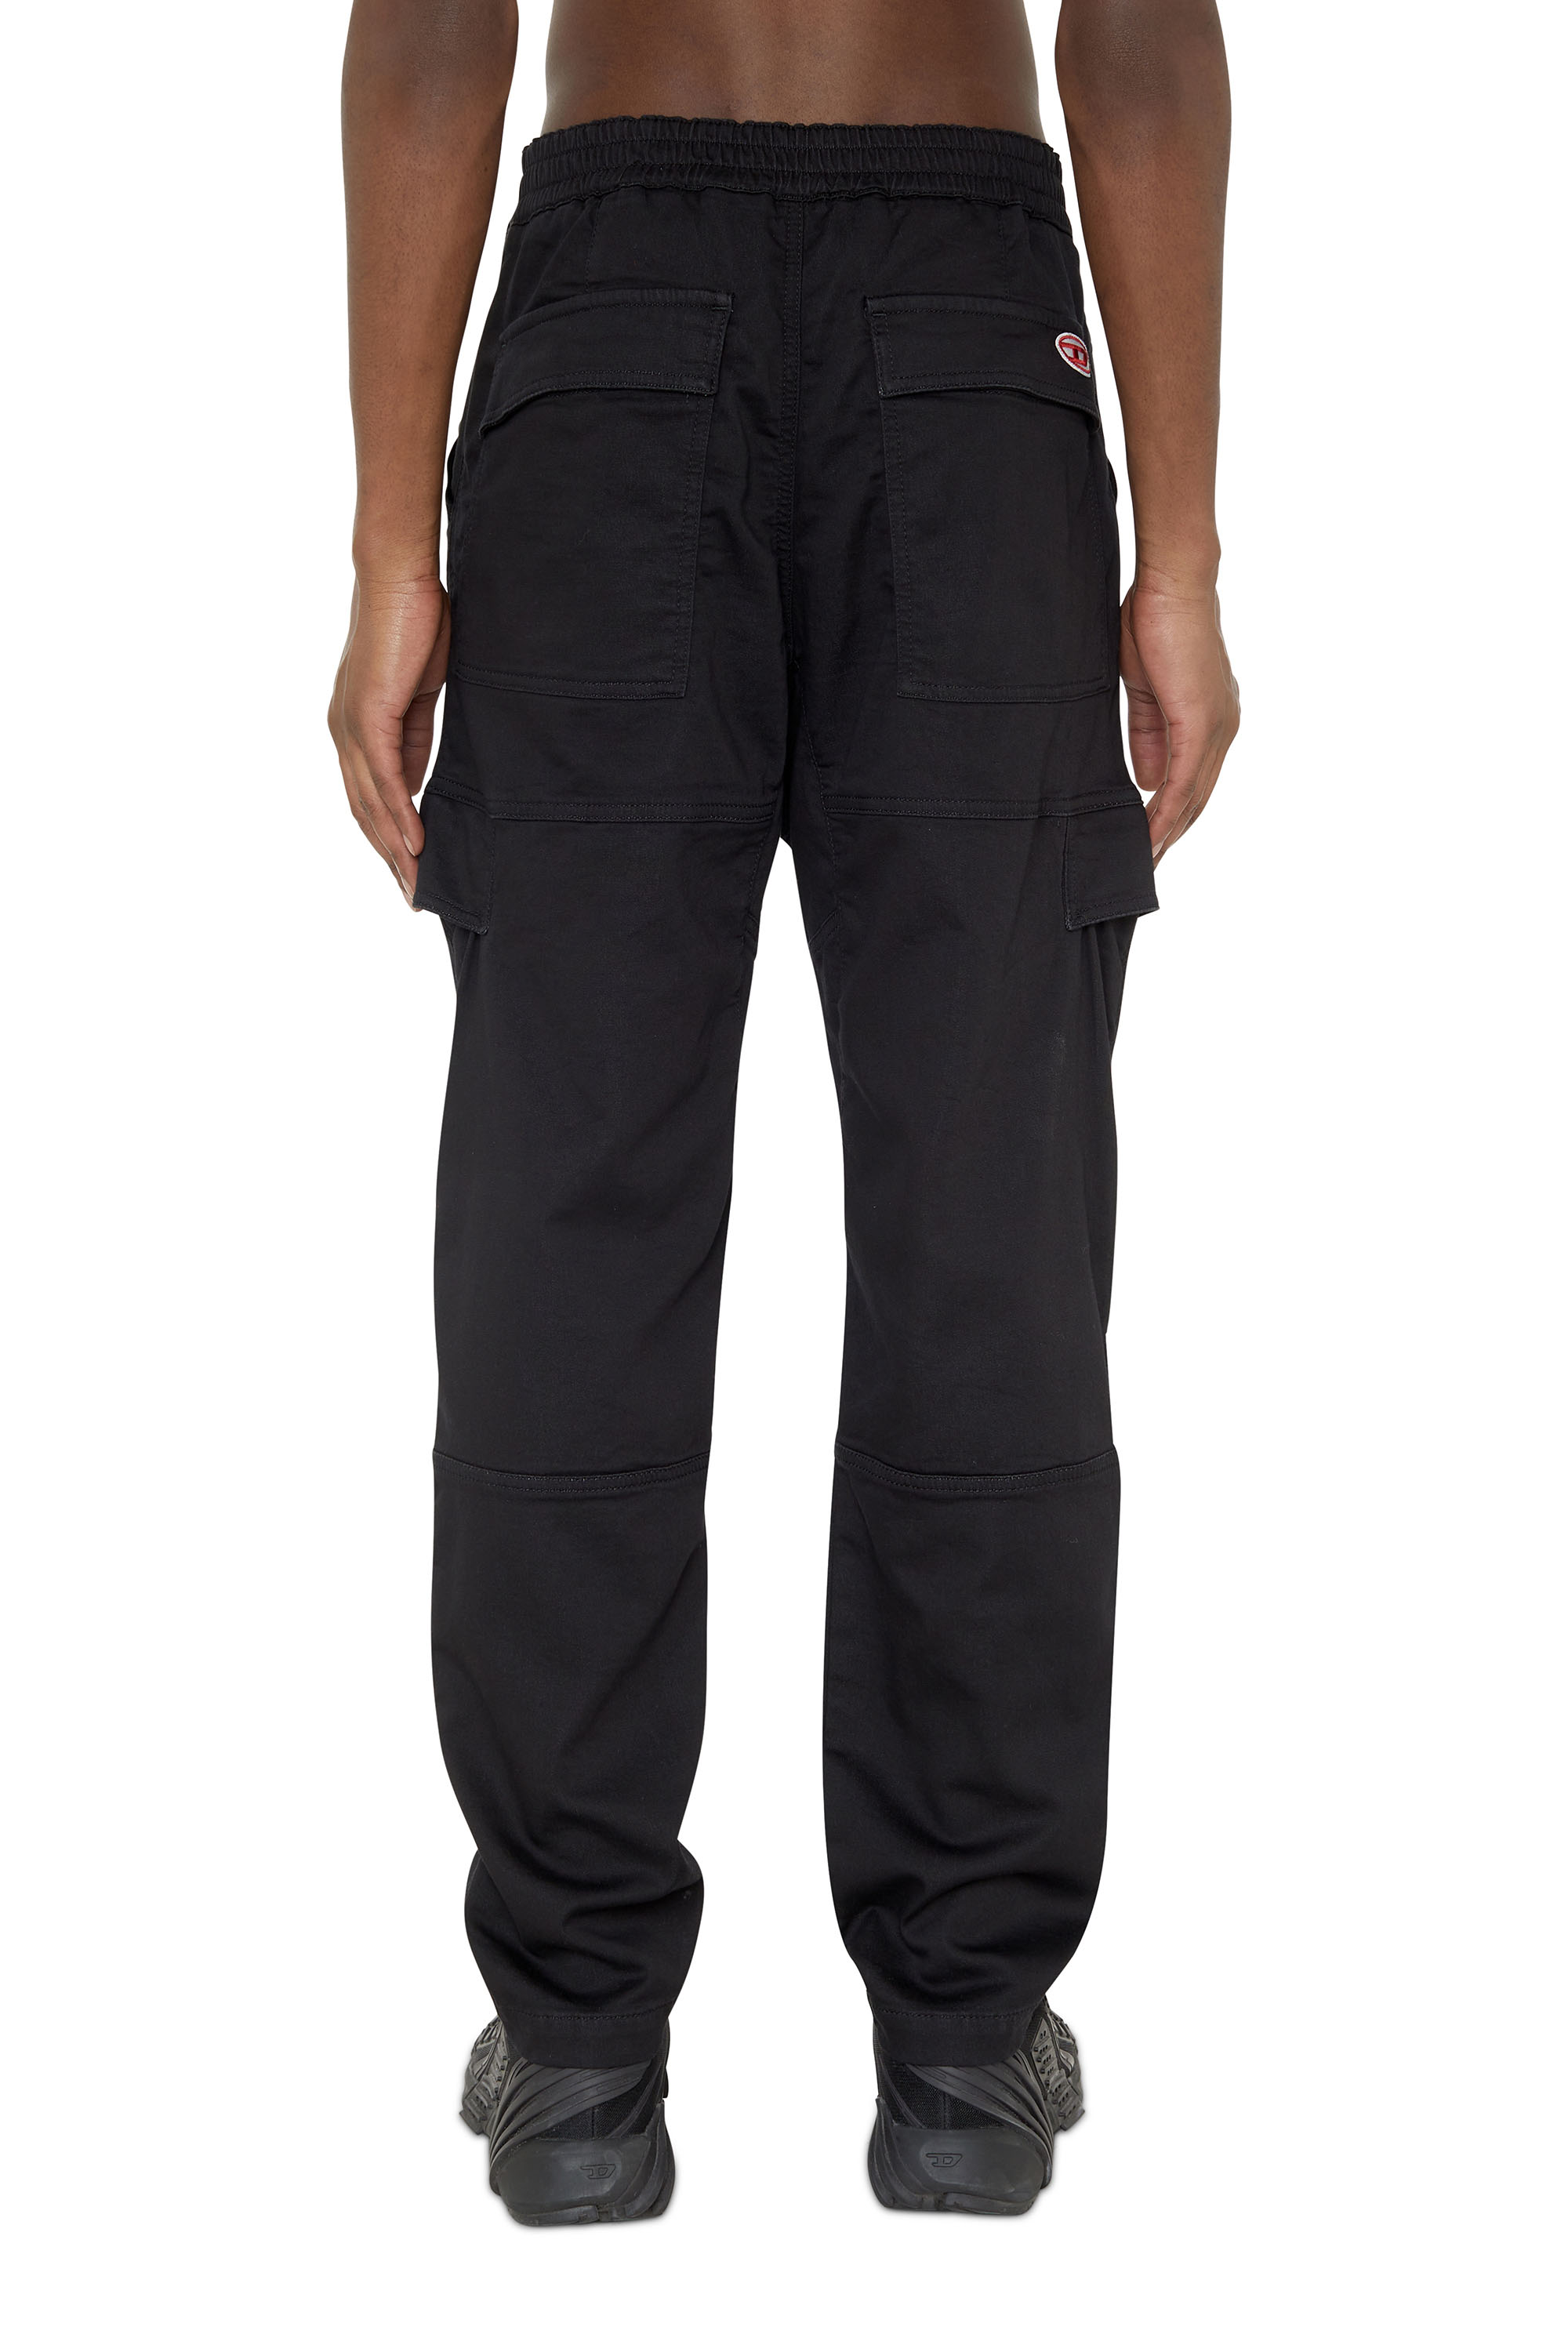 Diesel - Krooley JoggJeans® 069ZG Tapered, Black/Dark grey - Image 2